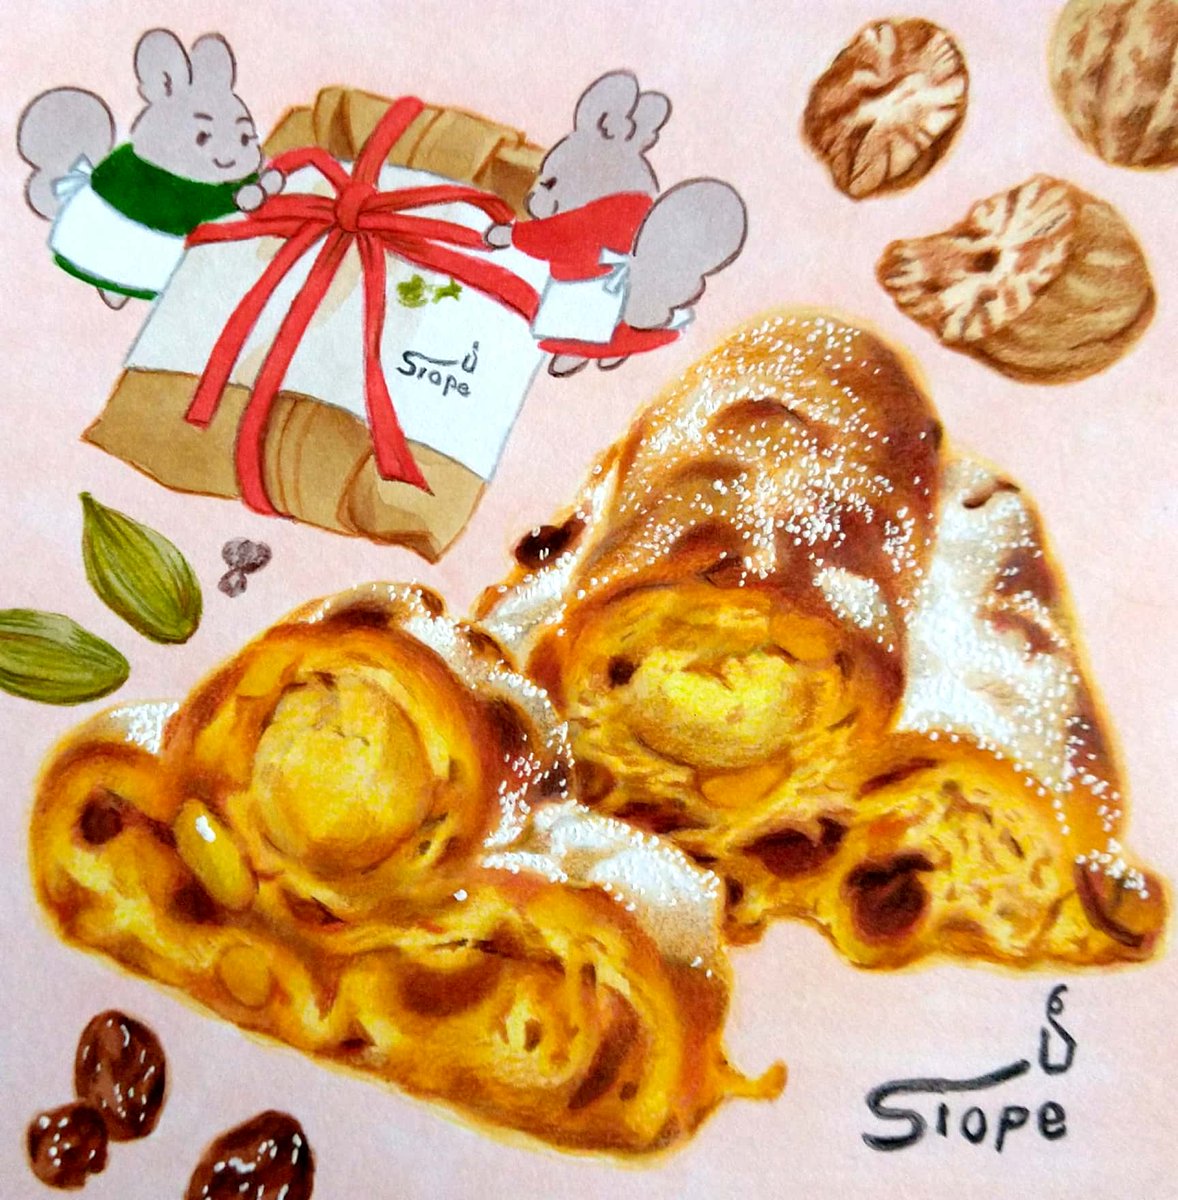 札幌・cafeスロープさんの「窯焼きシュトーレン」。札幌軟石の薪窯で焼き上げた、洋酒とスパイスの香り豊かなシュトーレン。さりさり、しっとり、贅沢に。クリスマスまでの時を刻むように一切れ一切れを大切に味わいます。
#田島ハルのくいしん簿 #北海道 #イラスト #食べ物イラスト 